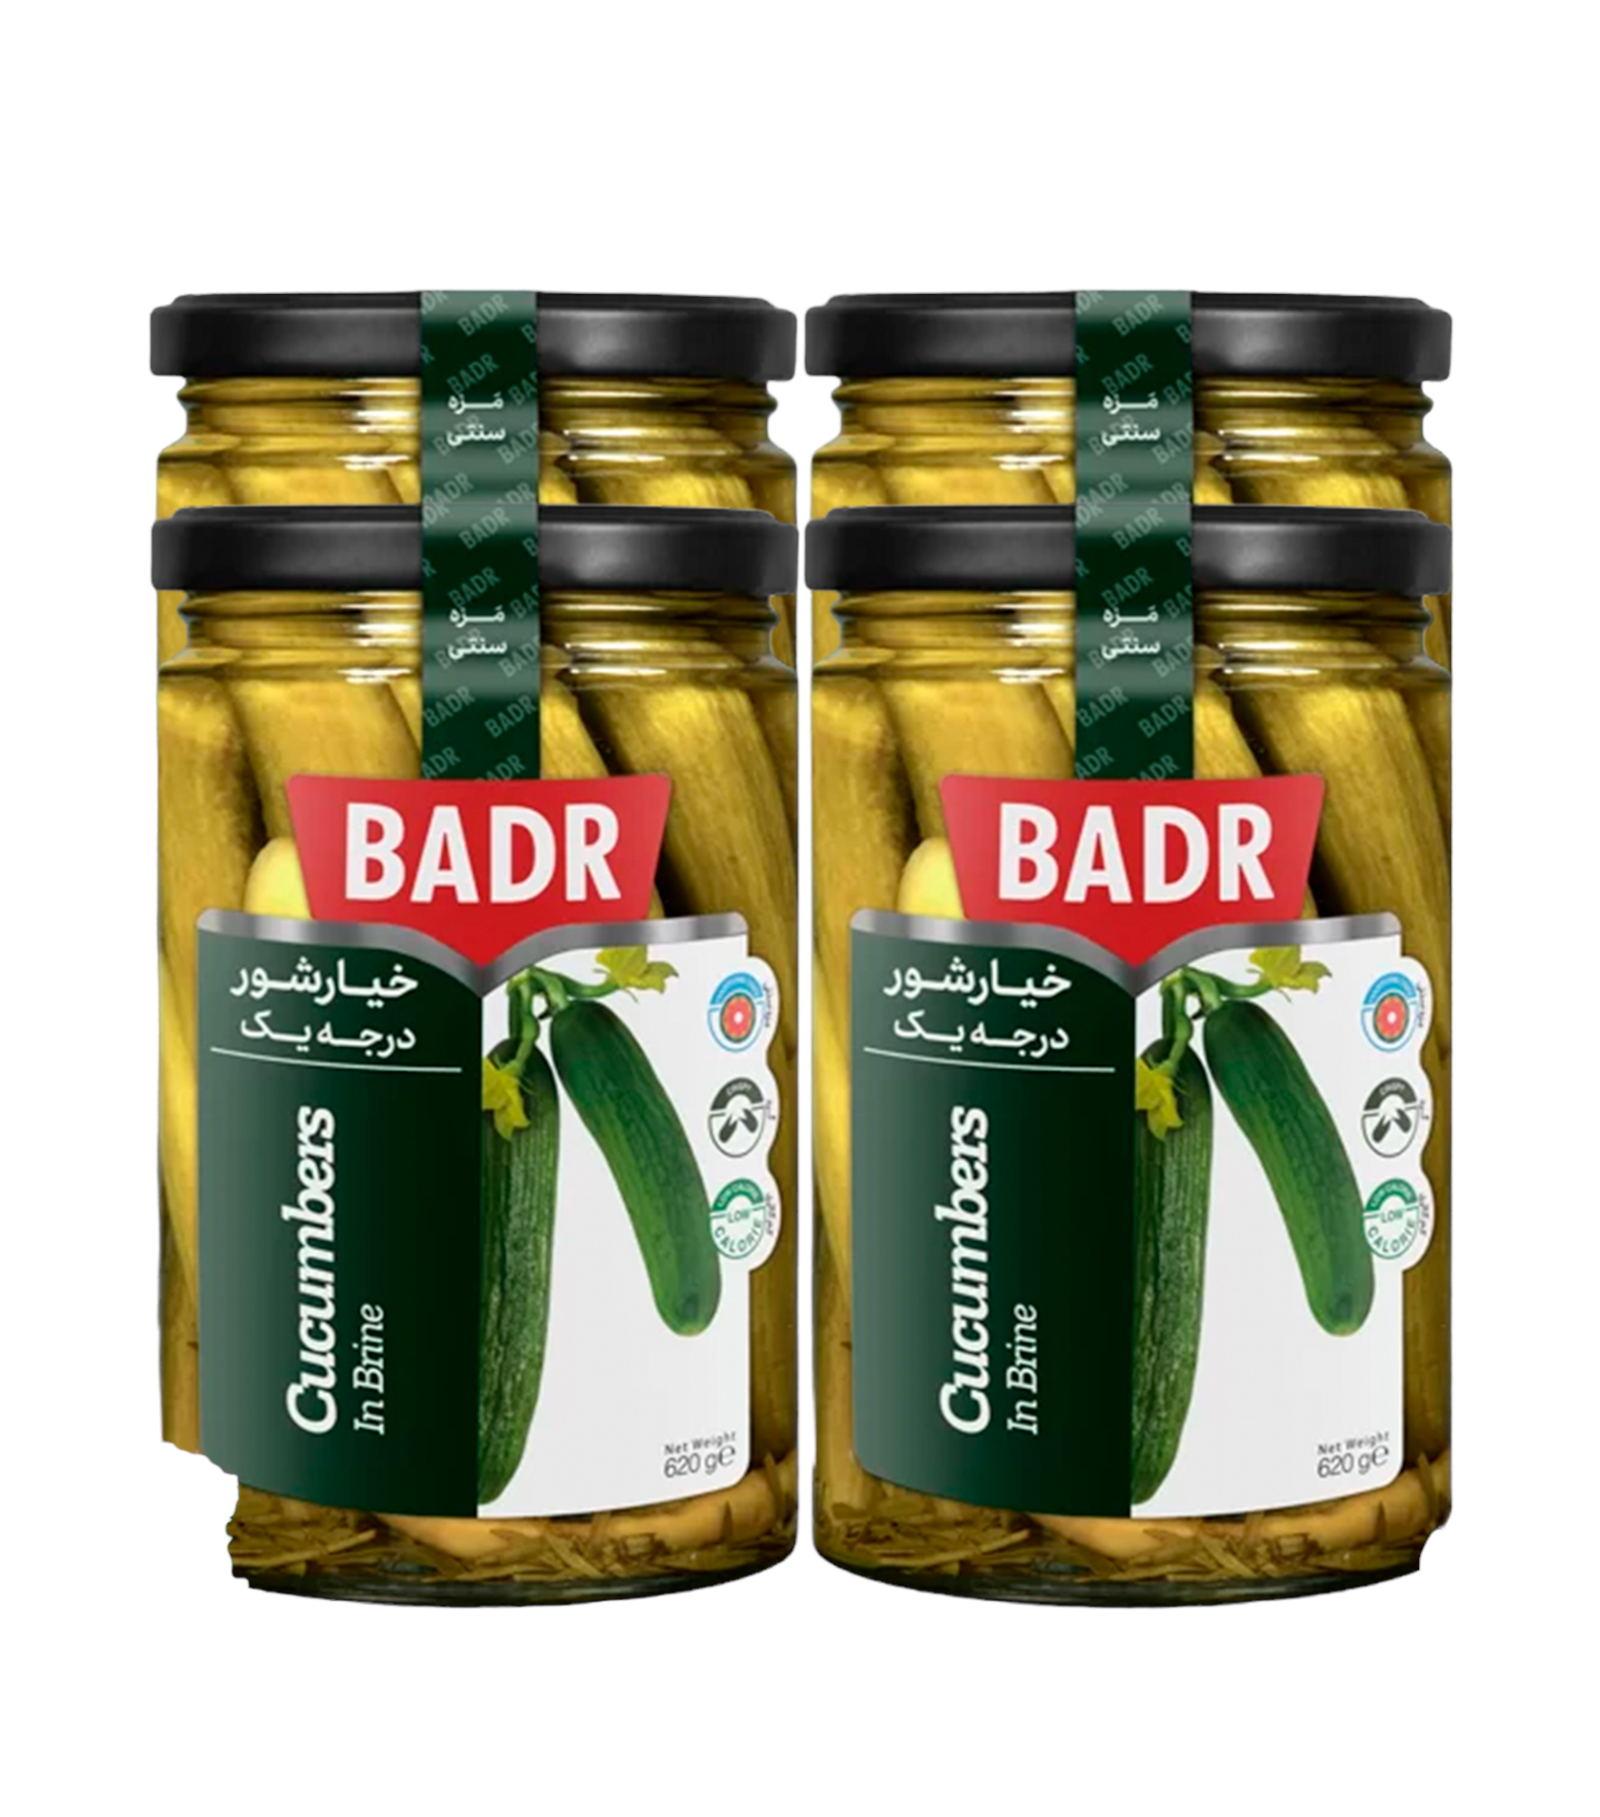 Огурцы в рассоле Badr, 4 шт по 620 г